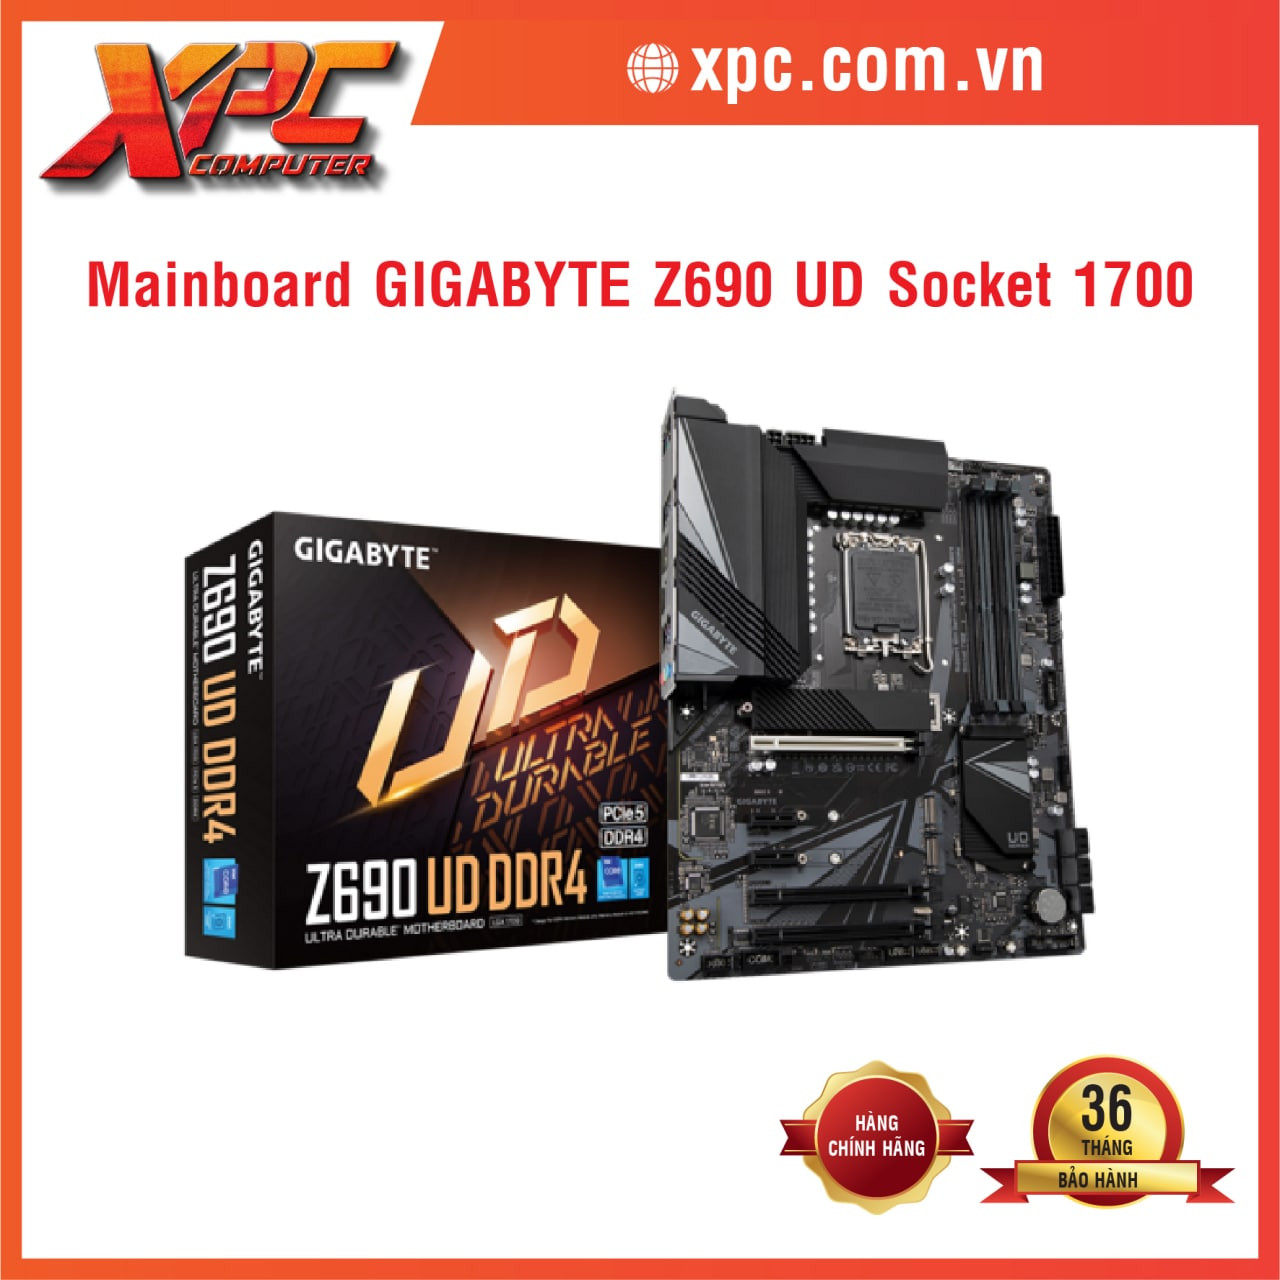 Mainboard GIGABYTE Z690 UD DDR4 - Socket1700